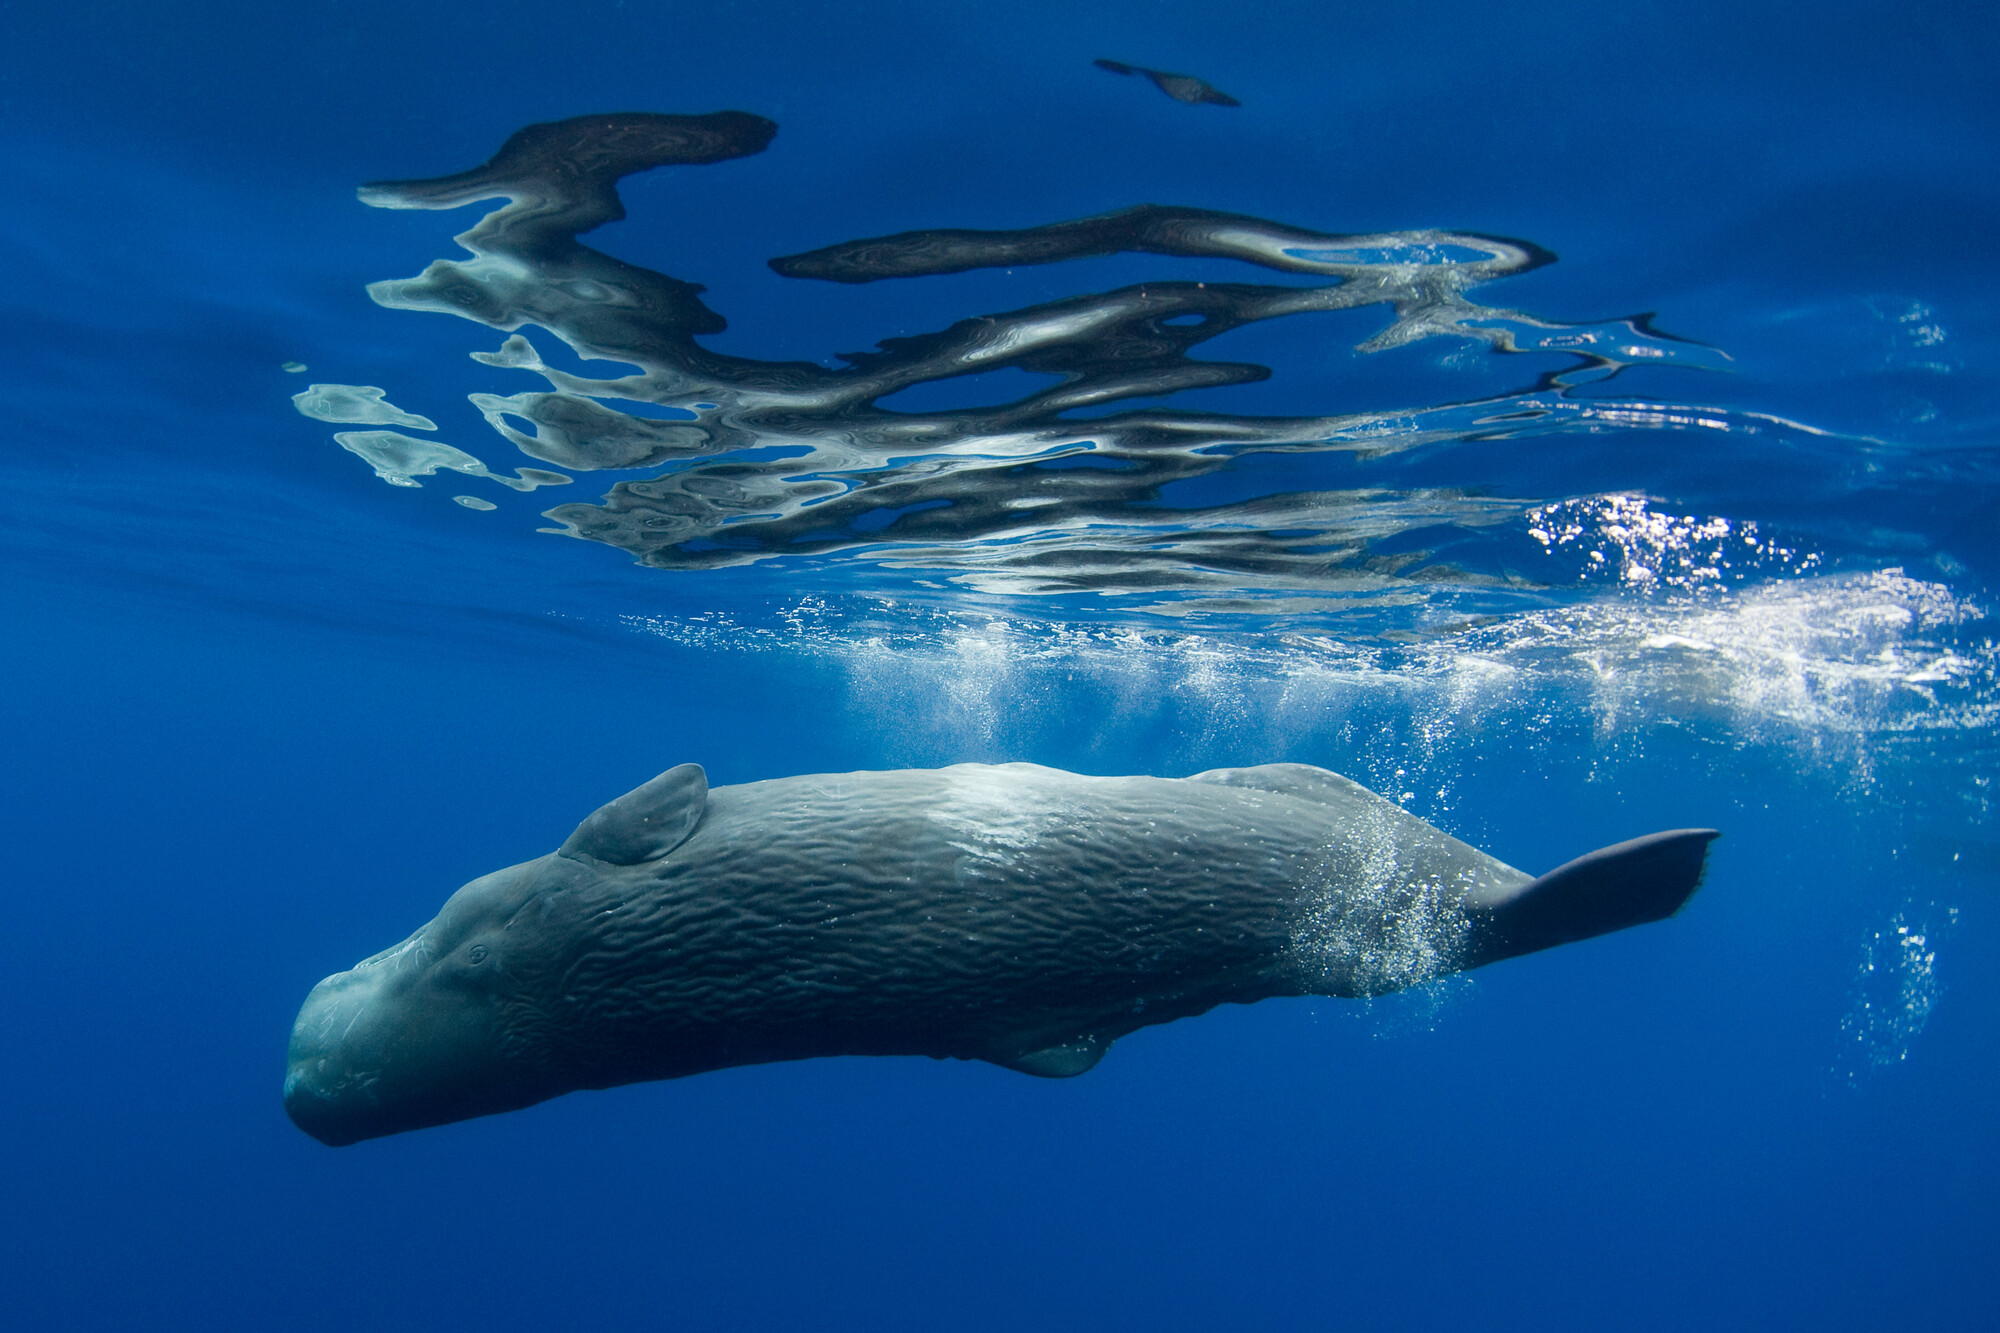 Sperm whale. Image credit: Envato Elements